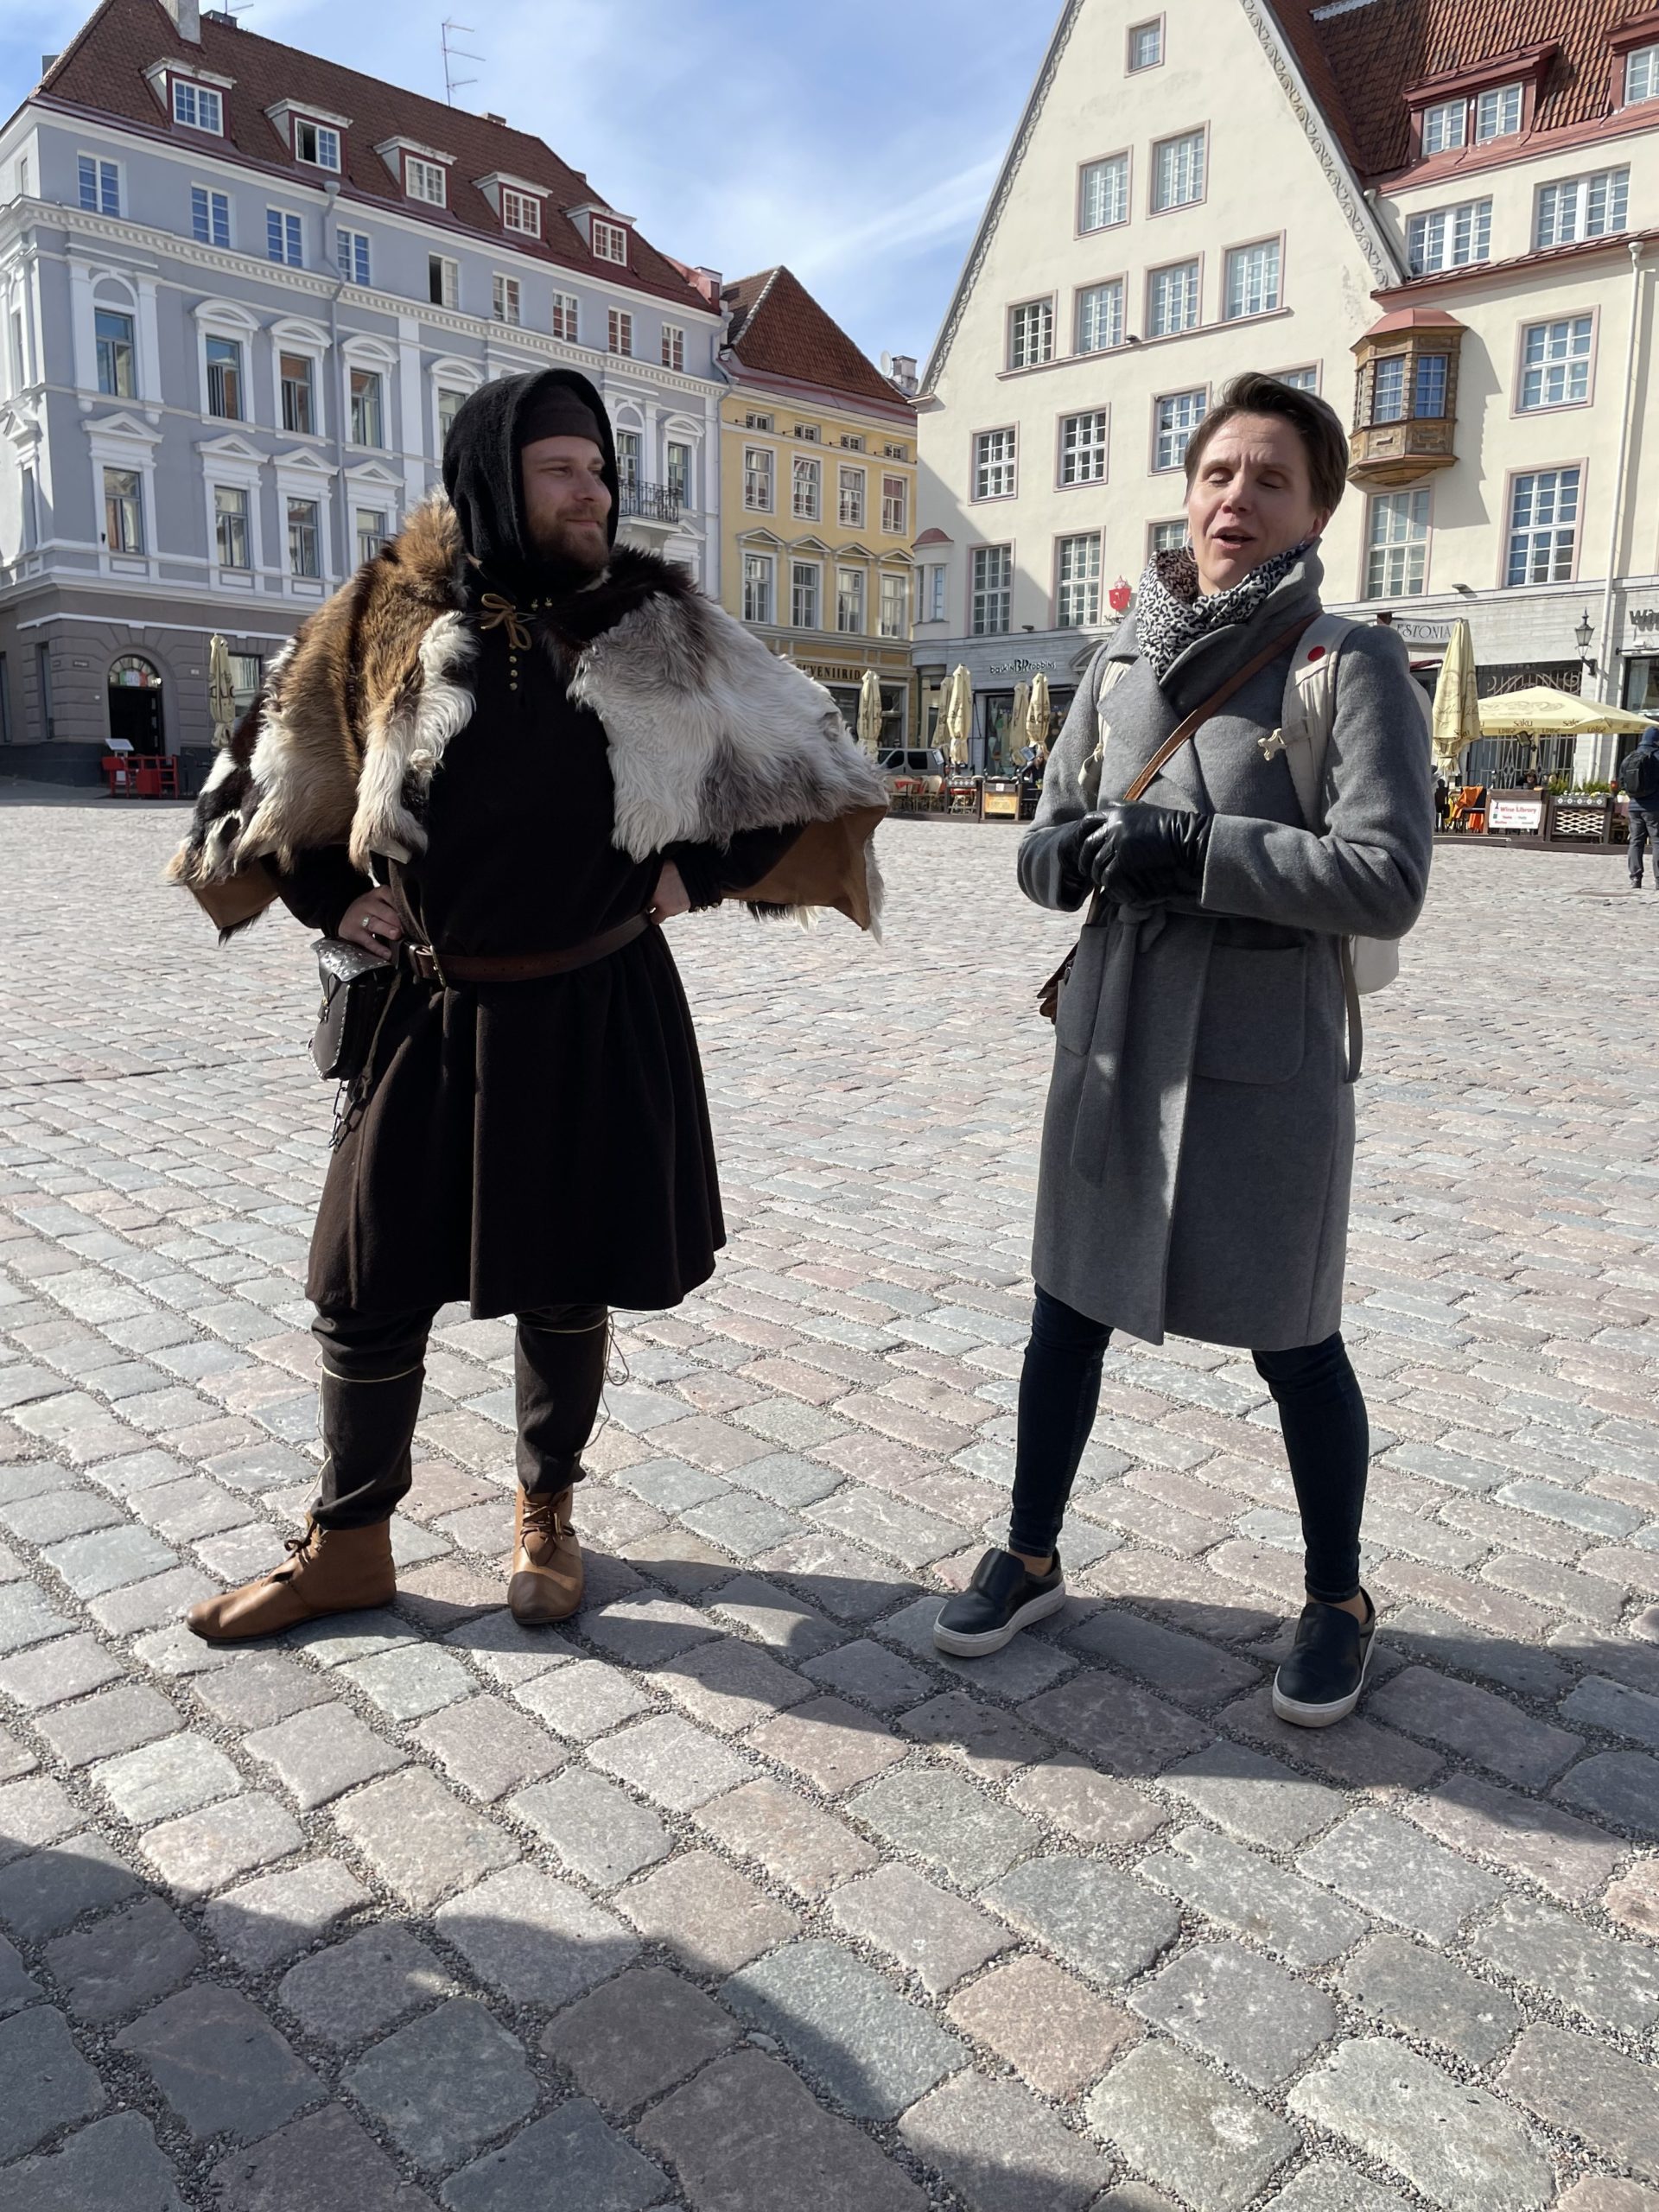 Tallinna-vinkkejä Tales of Reval